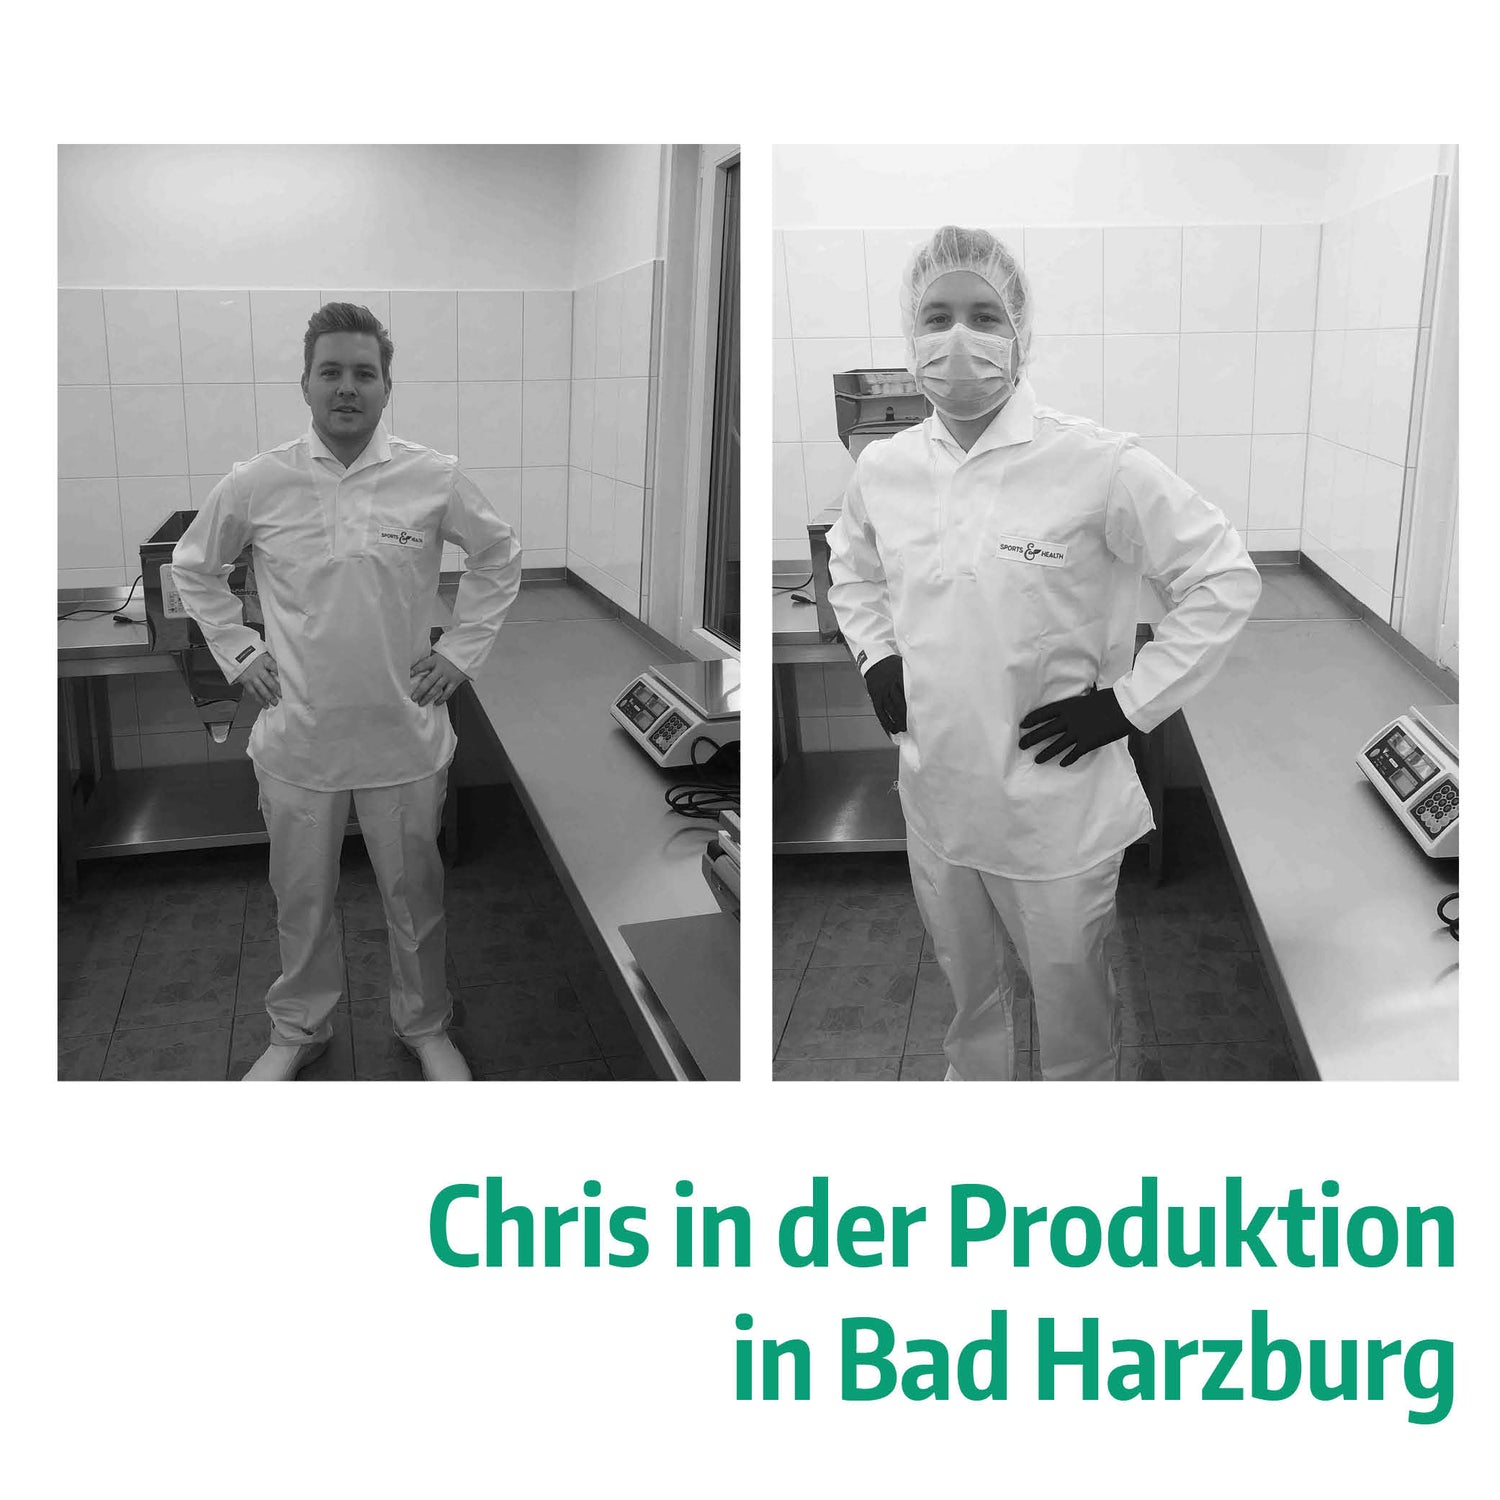 Chris von Sports&Health in der Produktion in Bad Harzburg